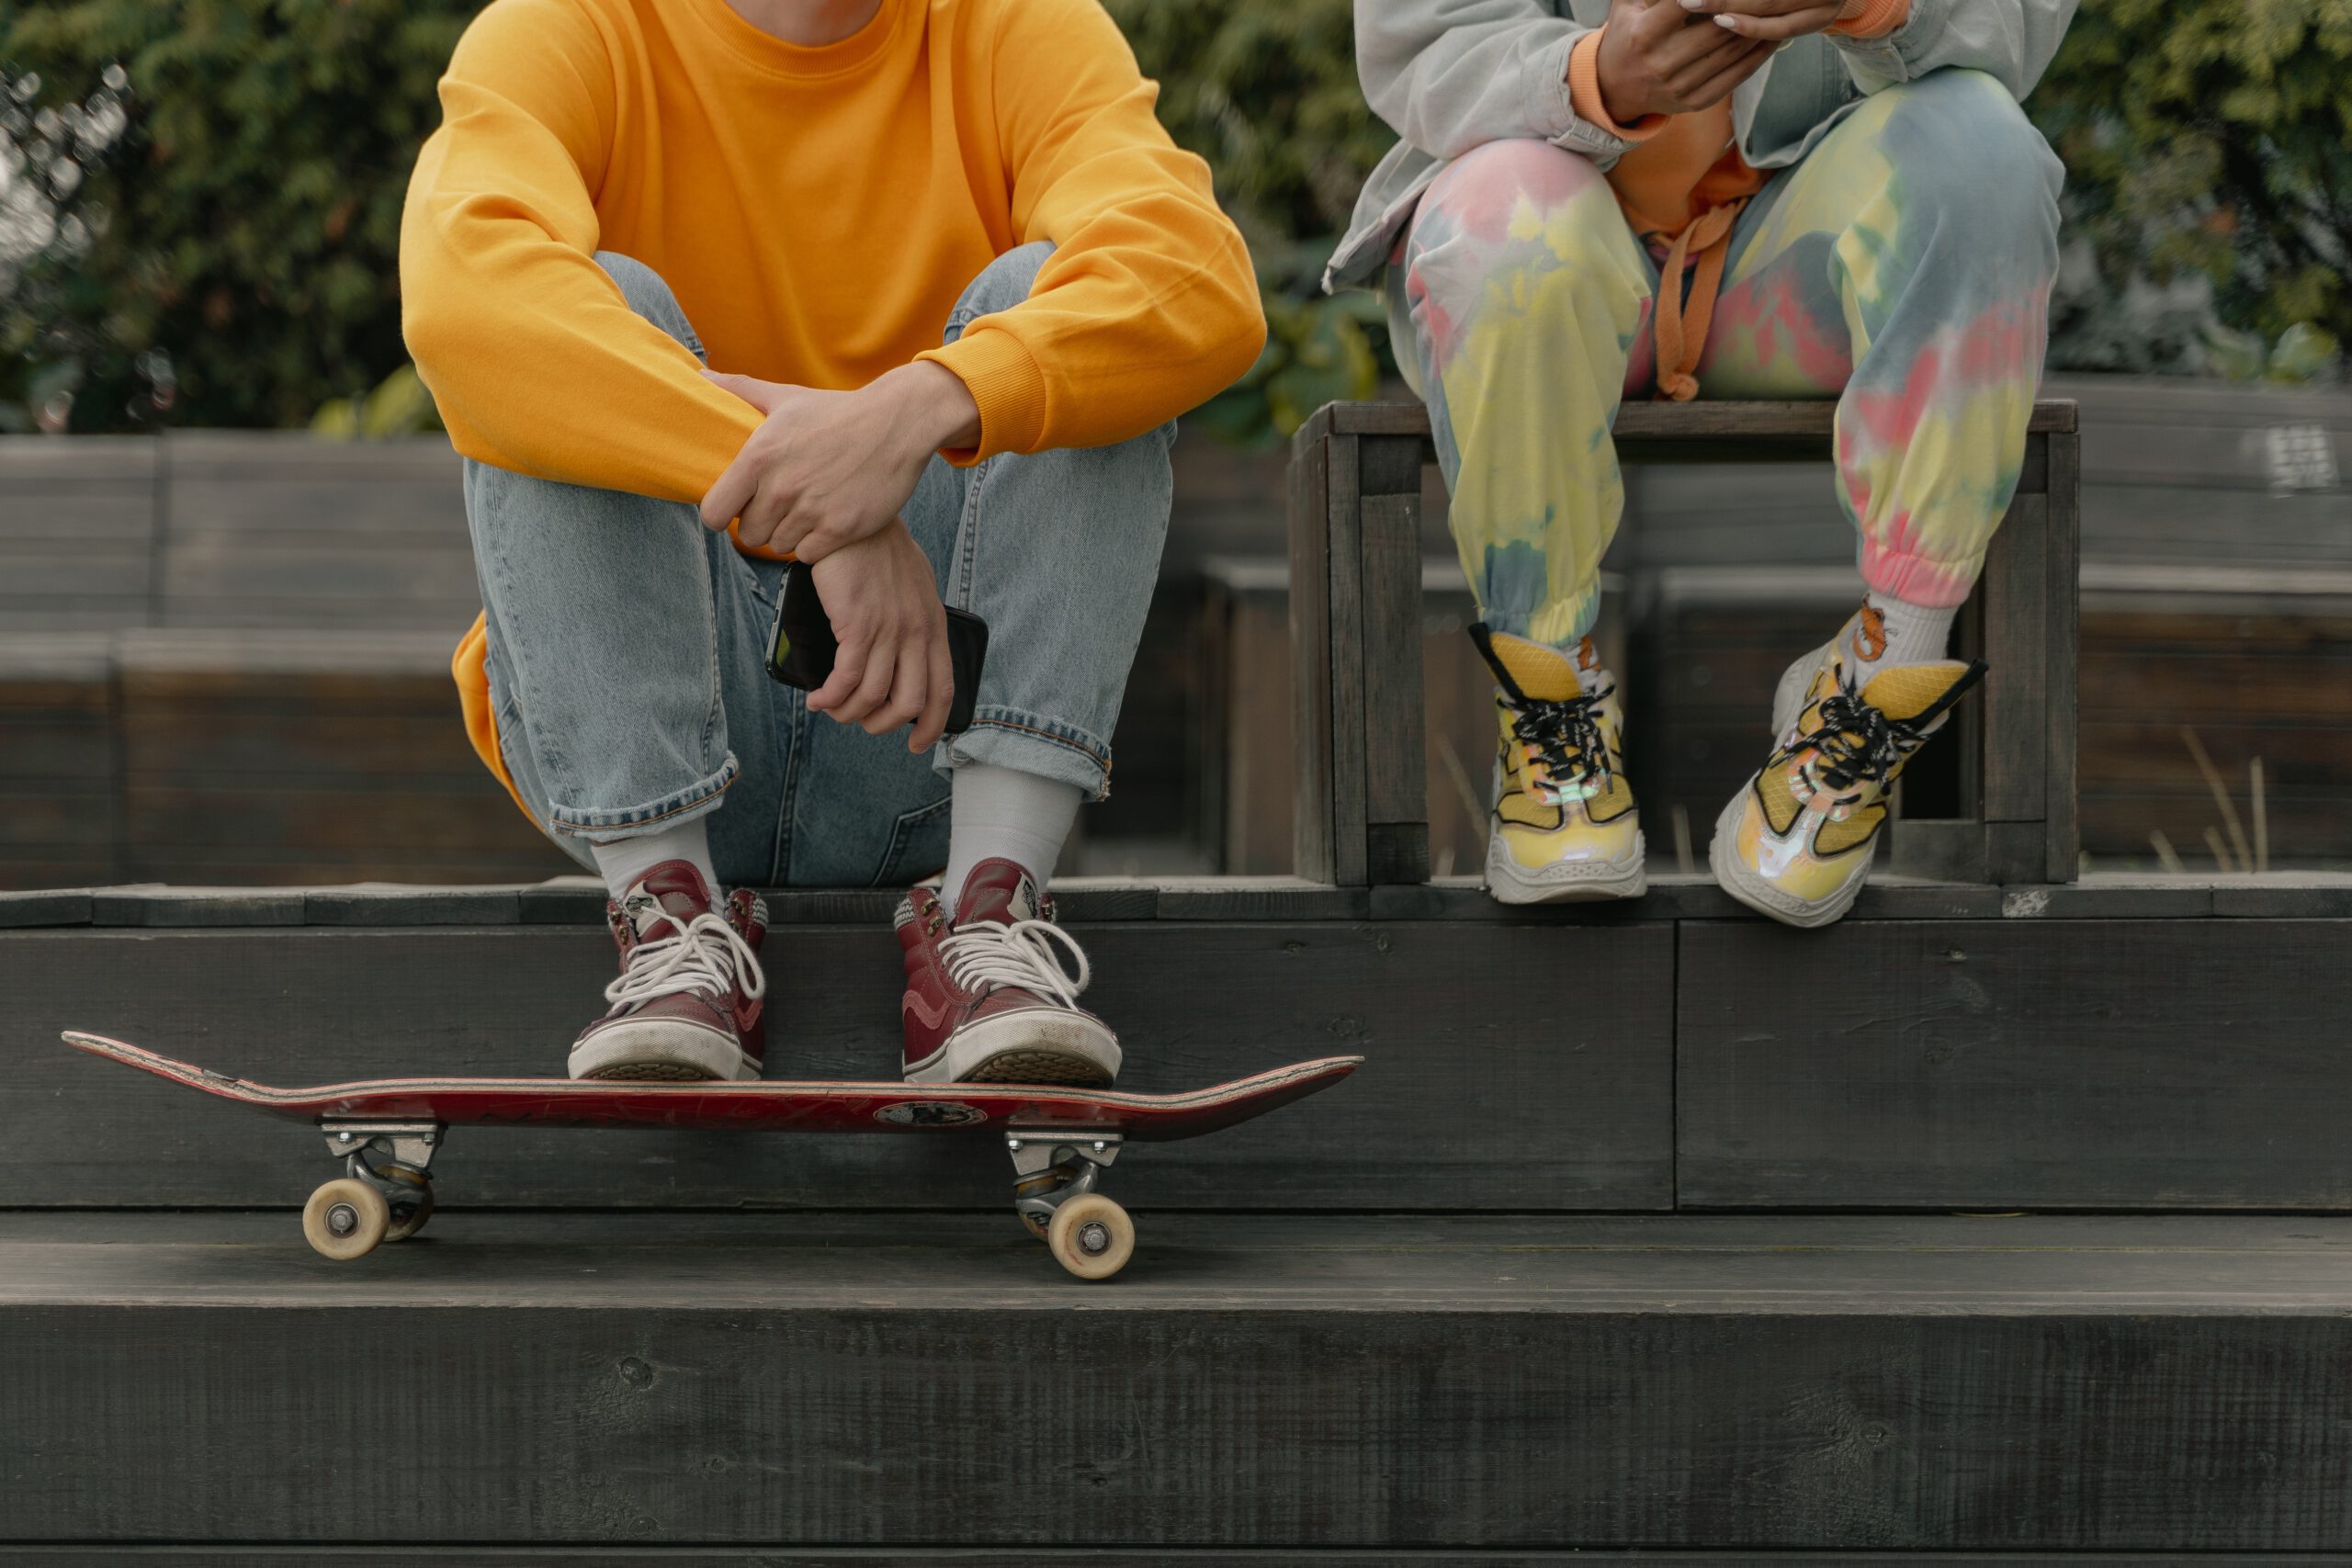 Młodzi chłopcy siedzący na schodkach z zafarbowanymi metodą tie dye spodniami dresowymi